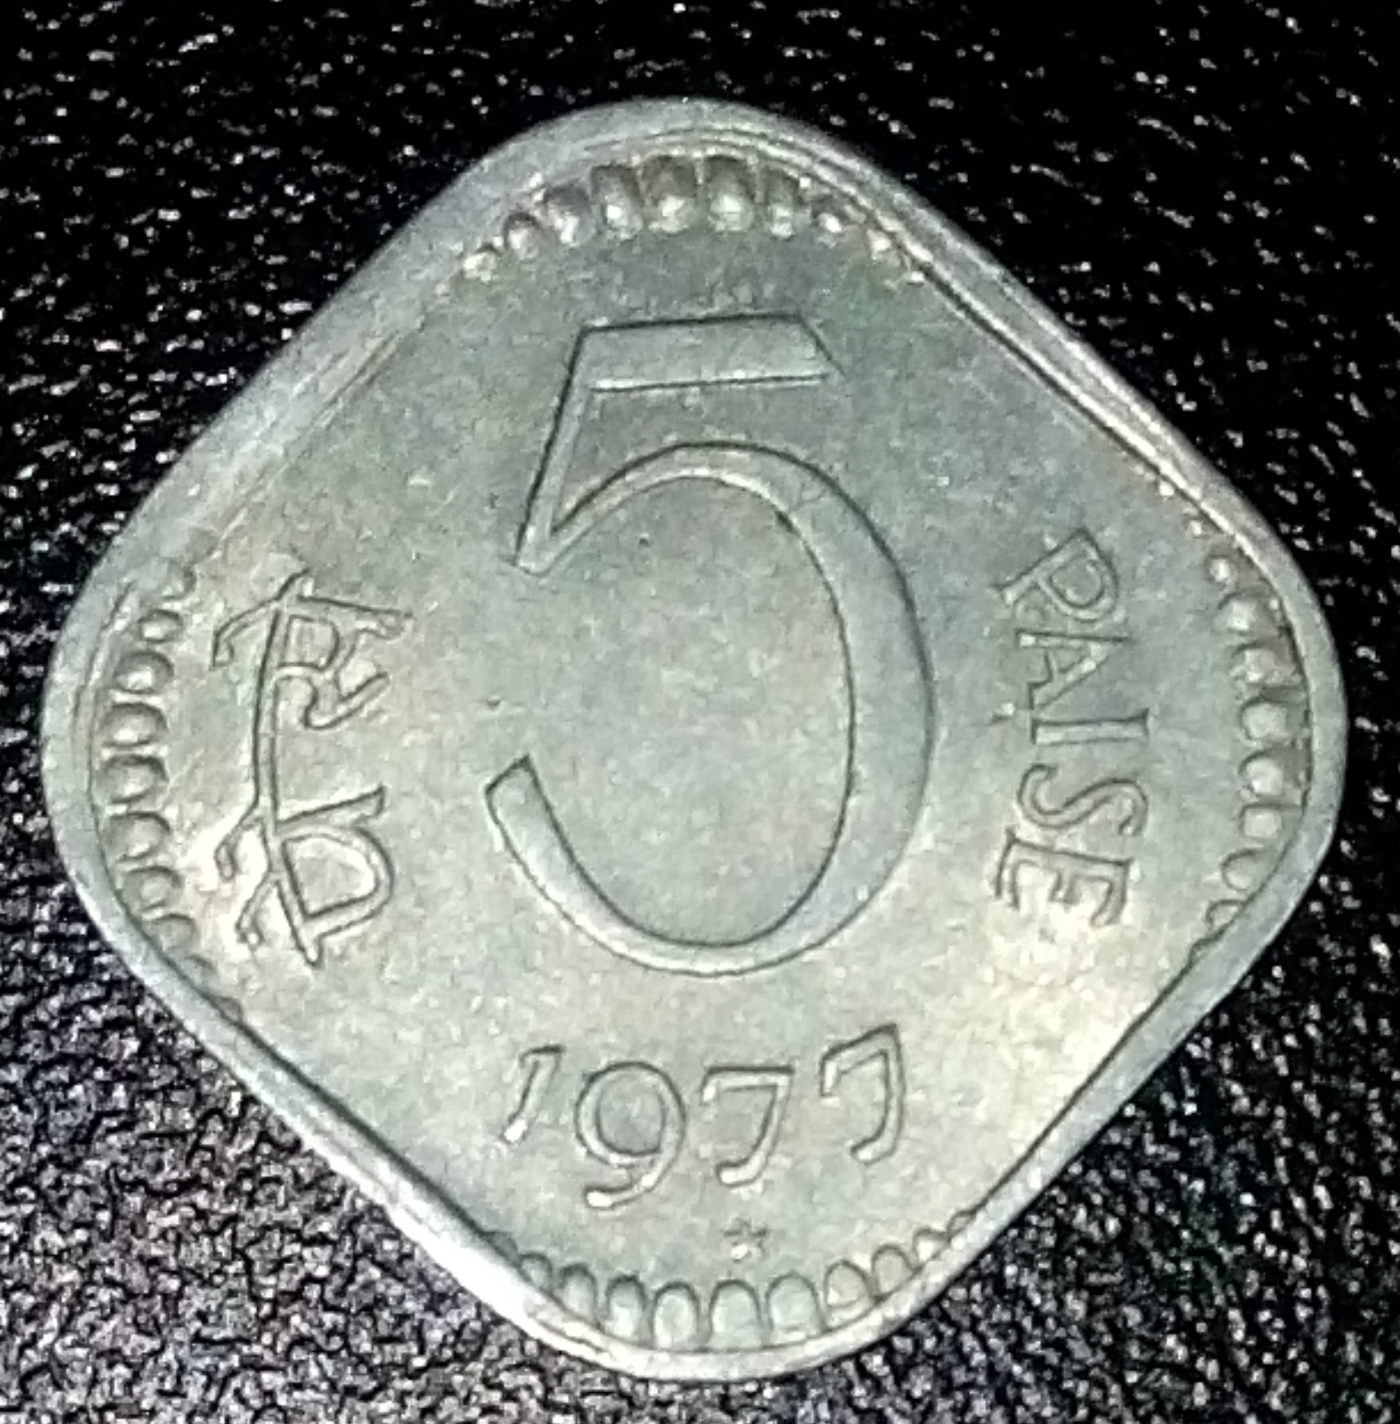 25-paise-1977-c-republic-1970-1980-india-coin-21904